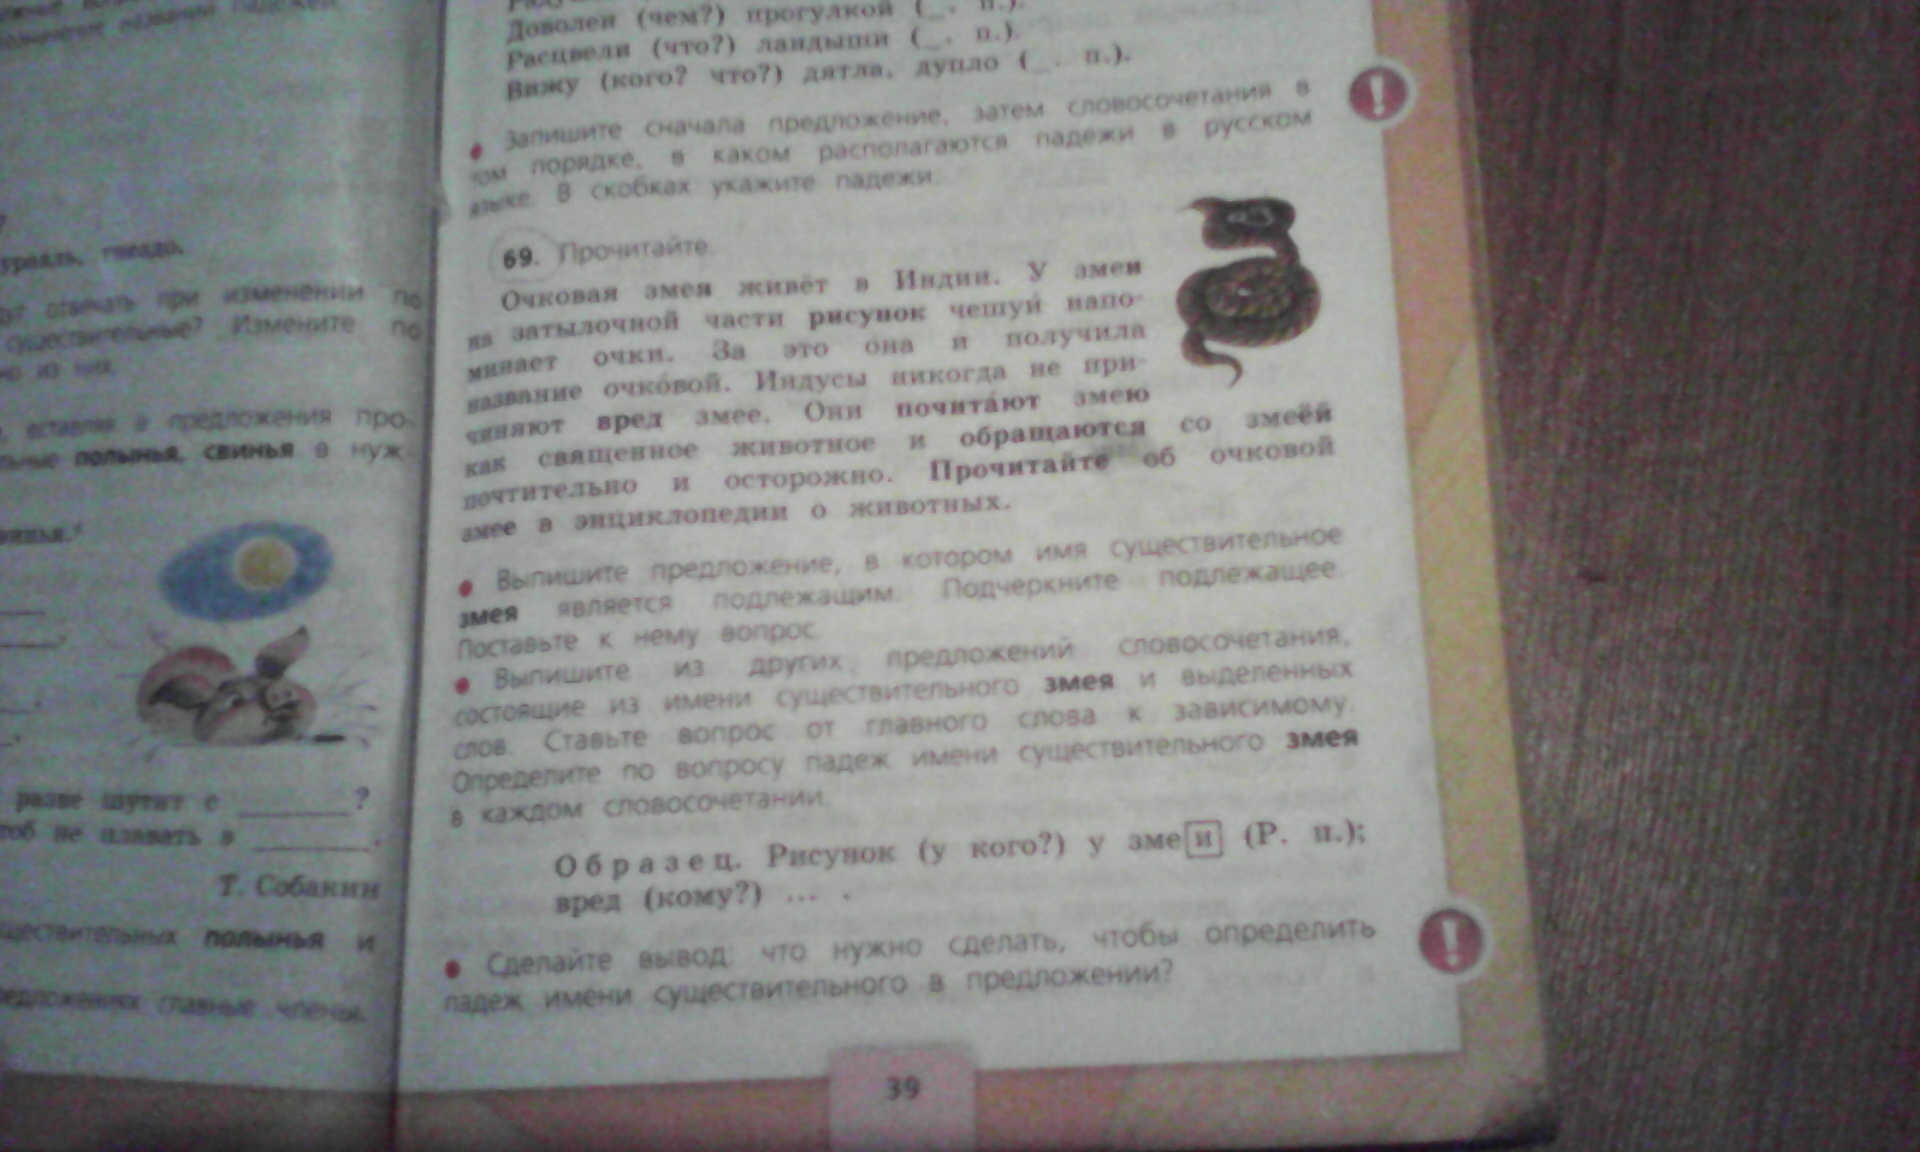 Русский язык стр 100 упр 14